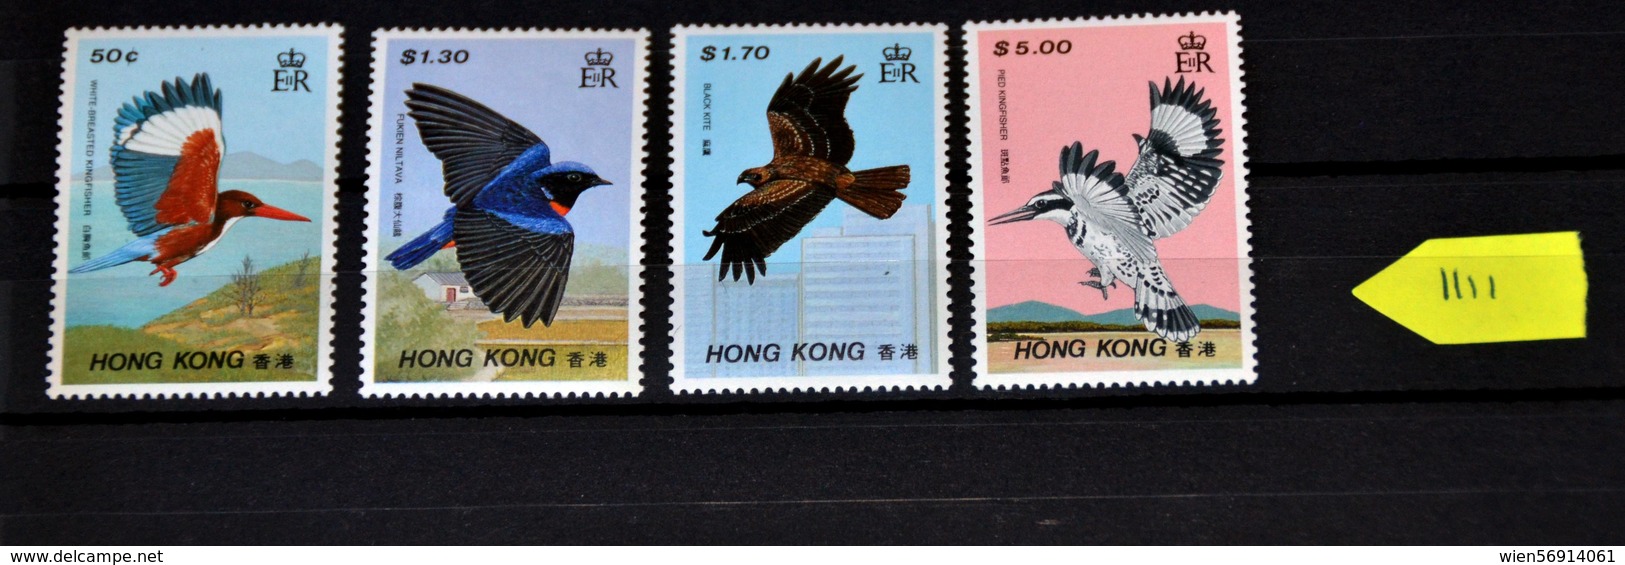 1111 China Hong Kong - Unused Stamps